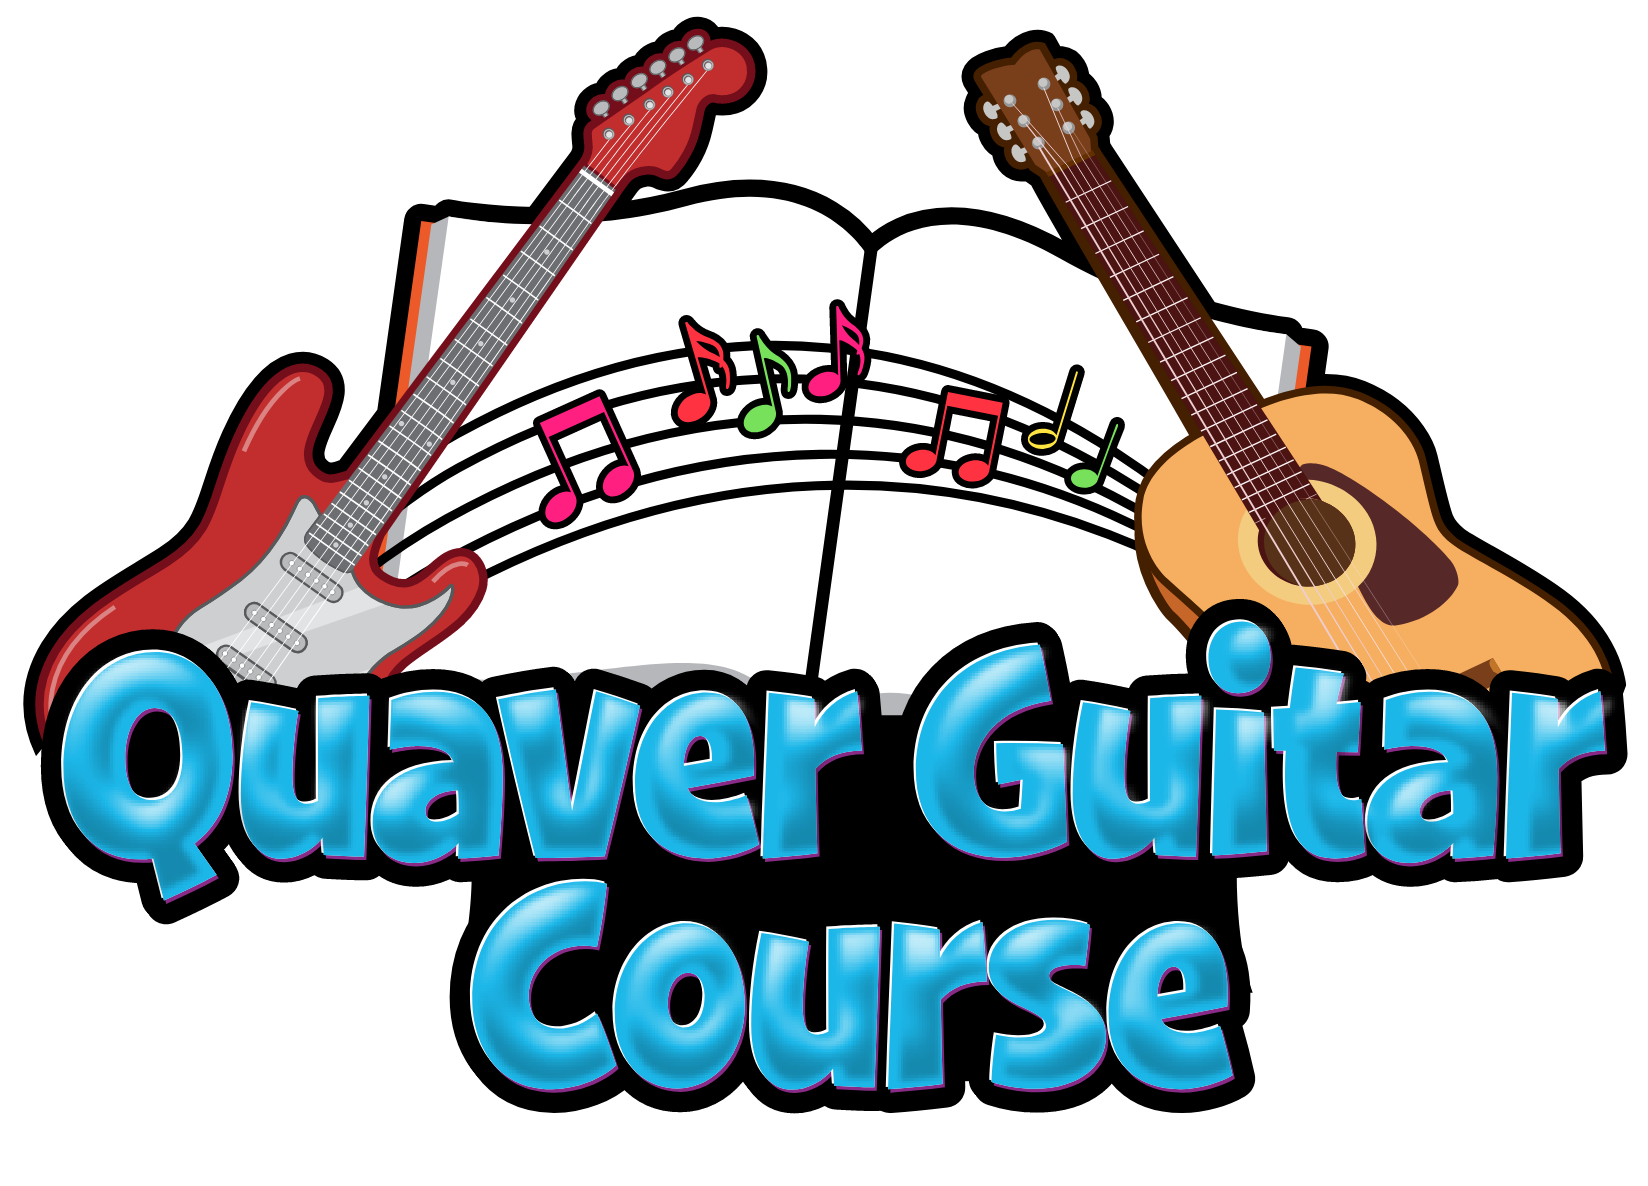 Quaver Guitar Course